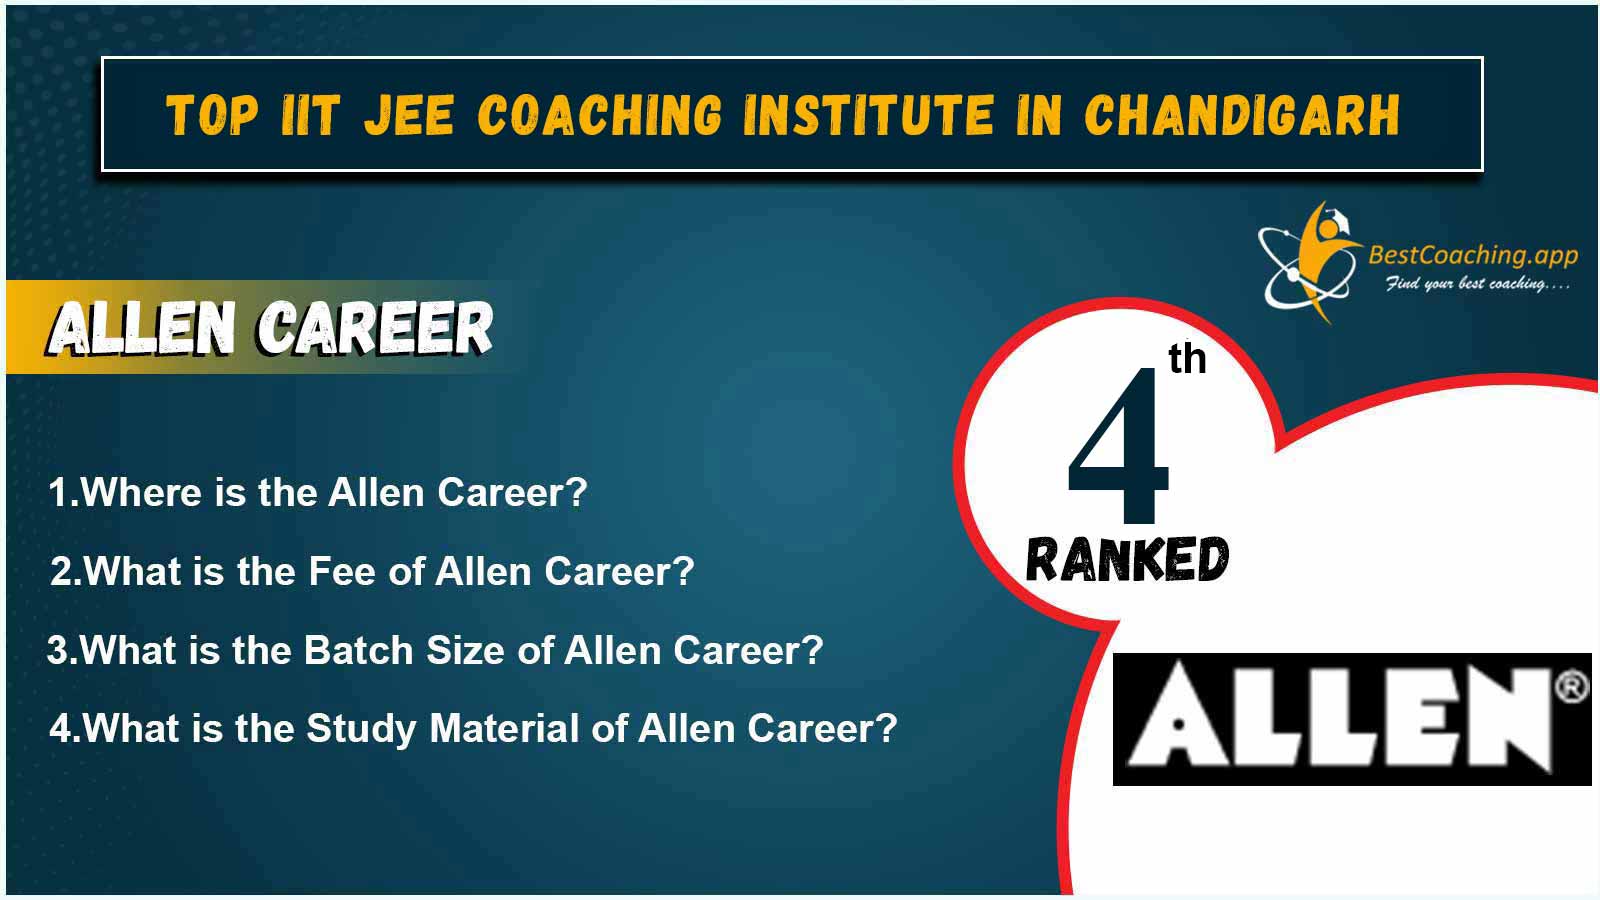 Top IIT JEE Coaching Institute In Chandigarh